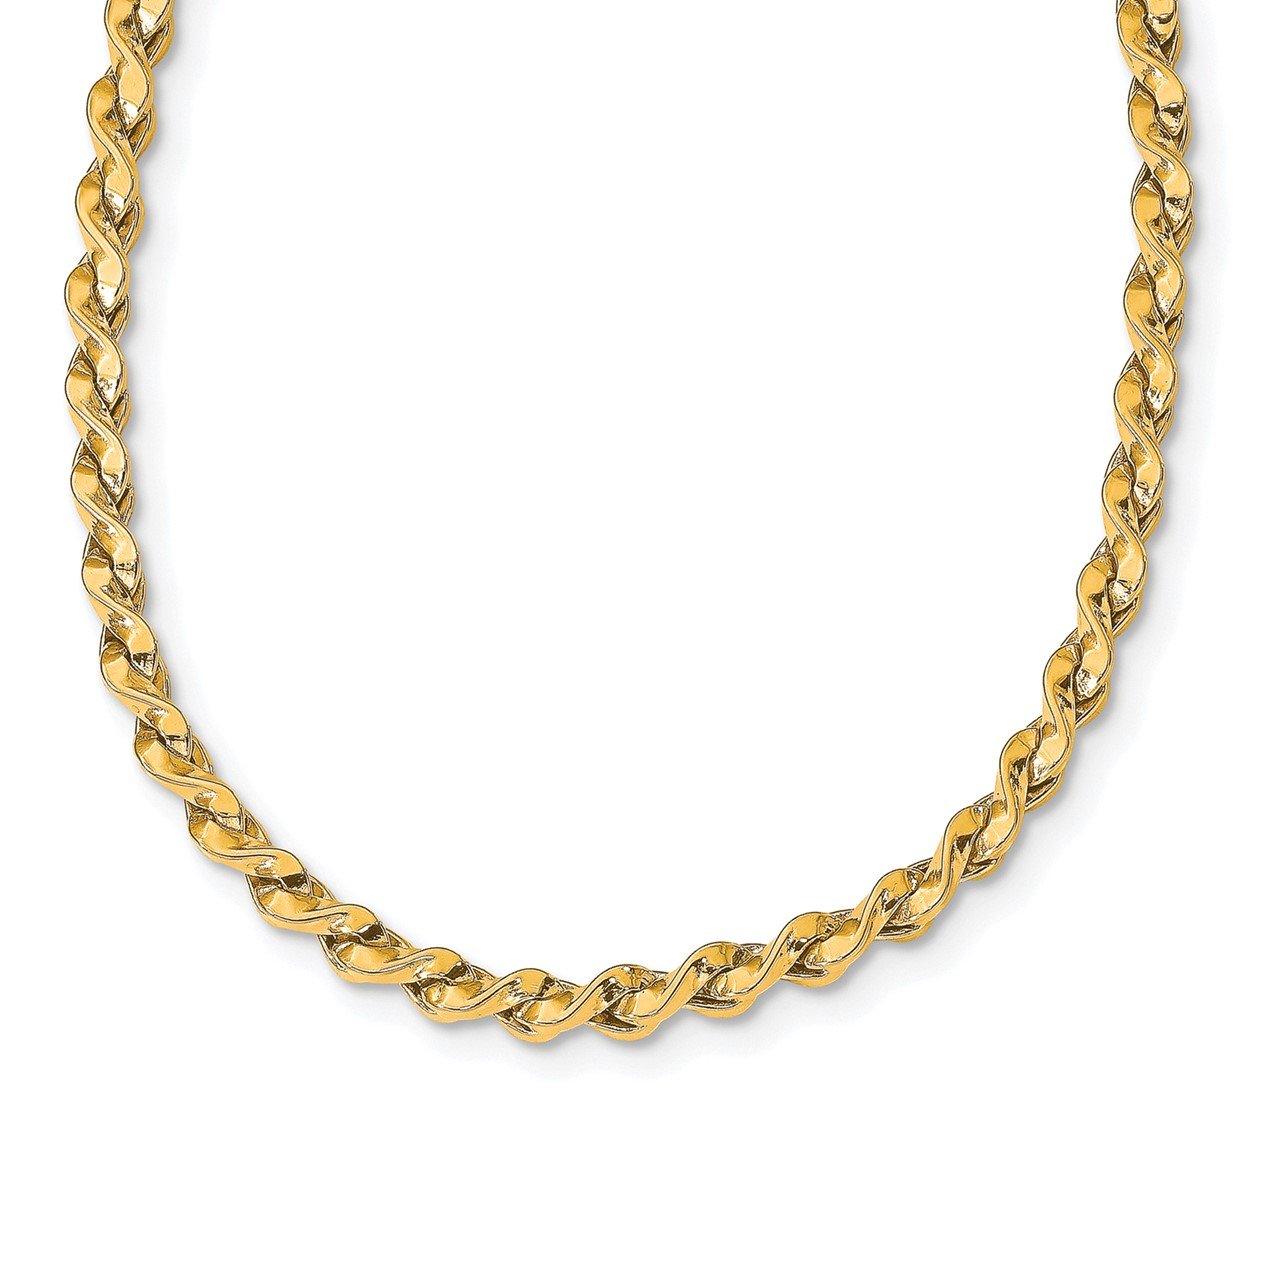 Leslie's 14k Polished Twisted Necklace